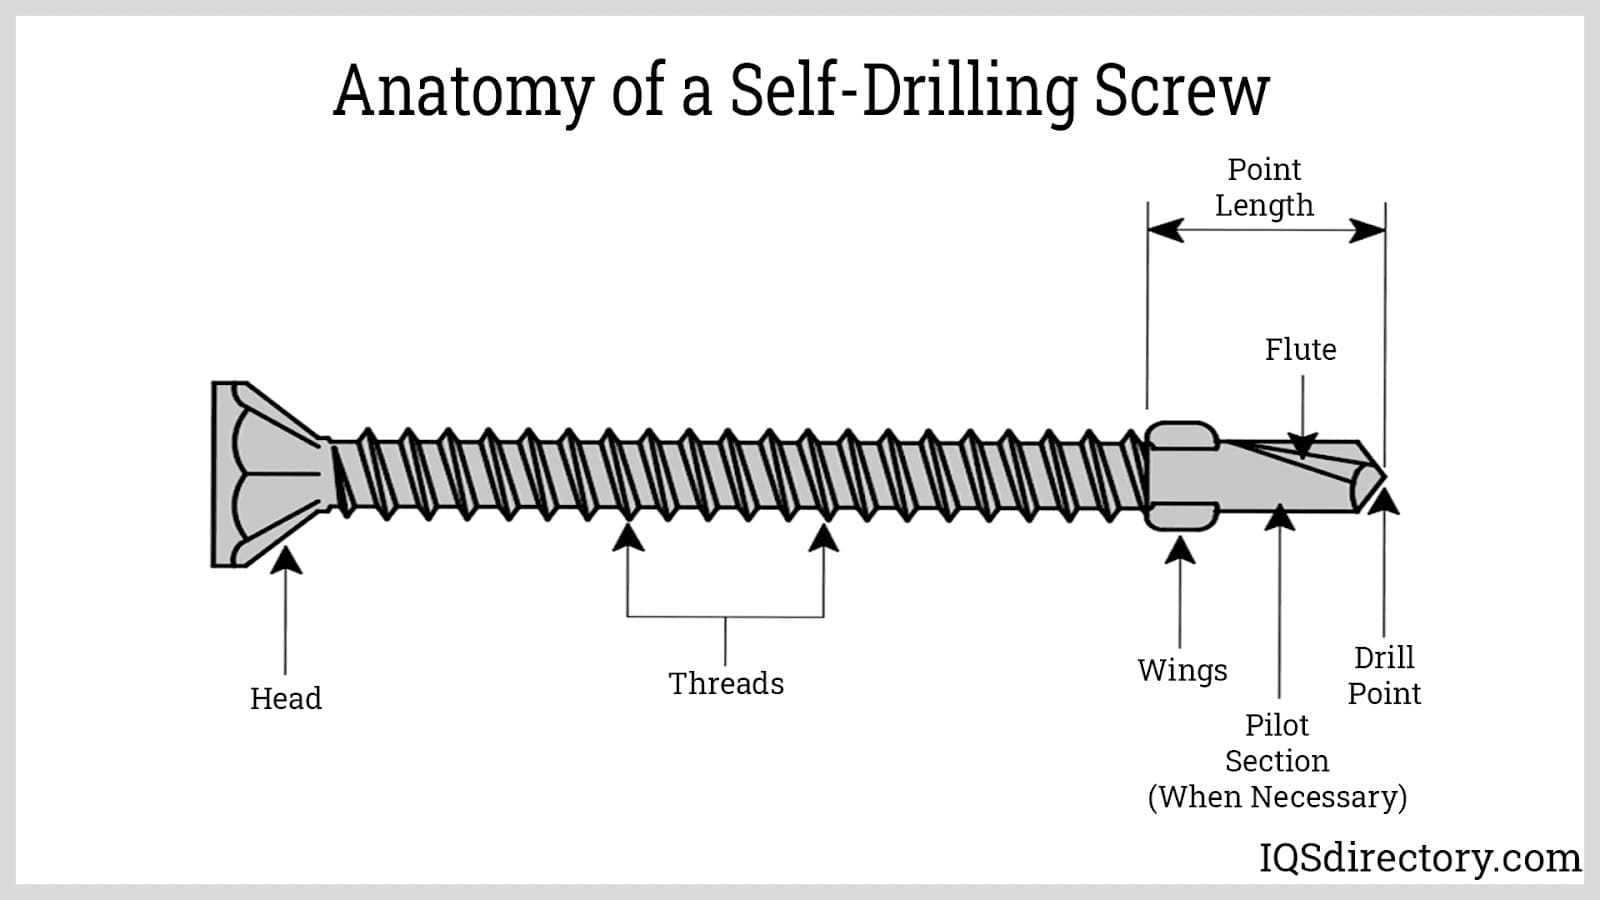 Self-Drilling Screws